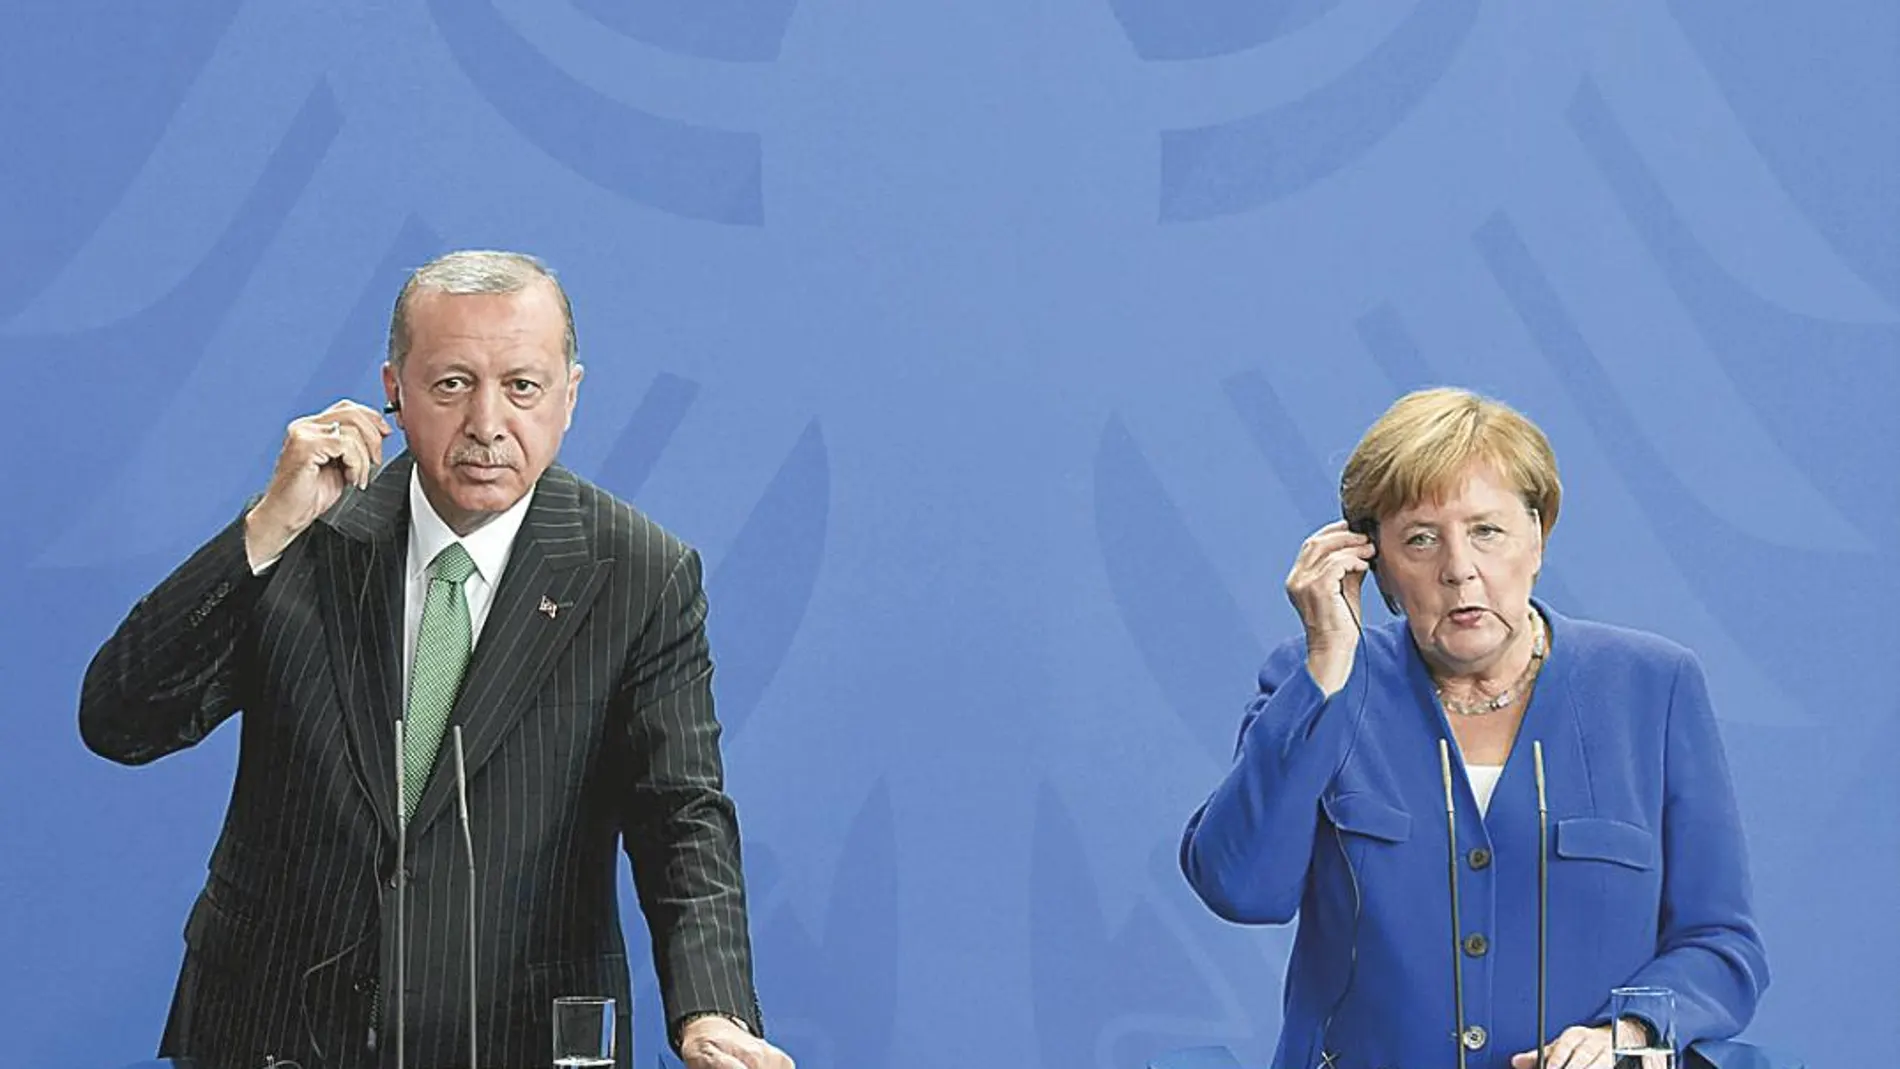 Tras años de tensiones entre los dos países, Erdogan visitó Alemania para tratar de pasar página y buscar la reconcialiación